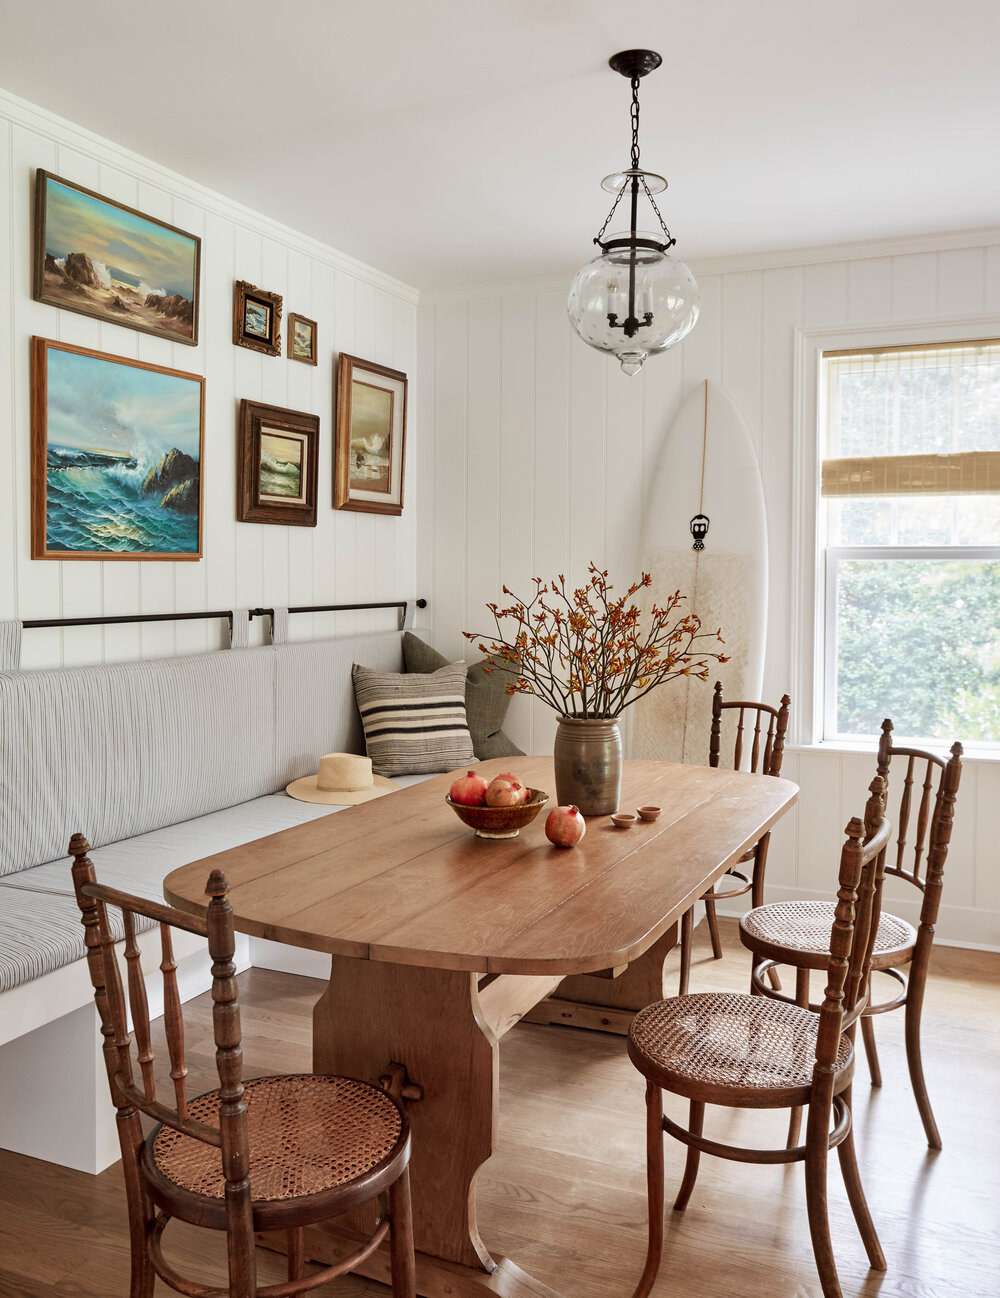 A farmhouse style dining room